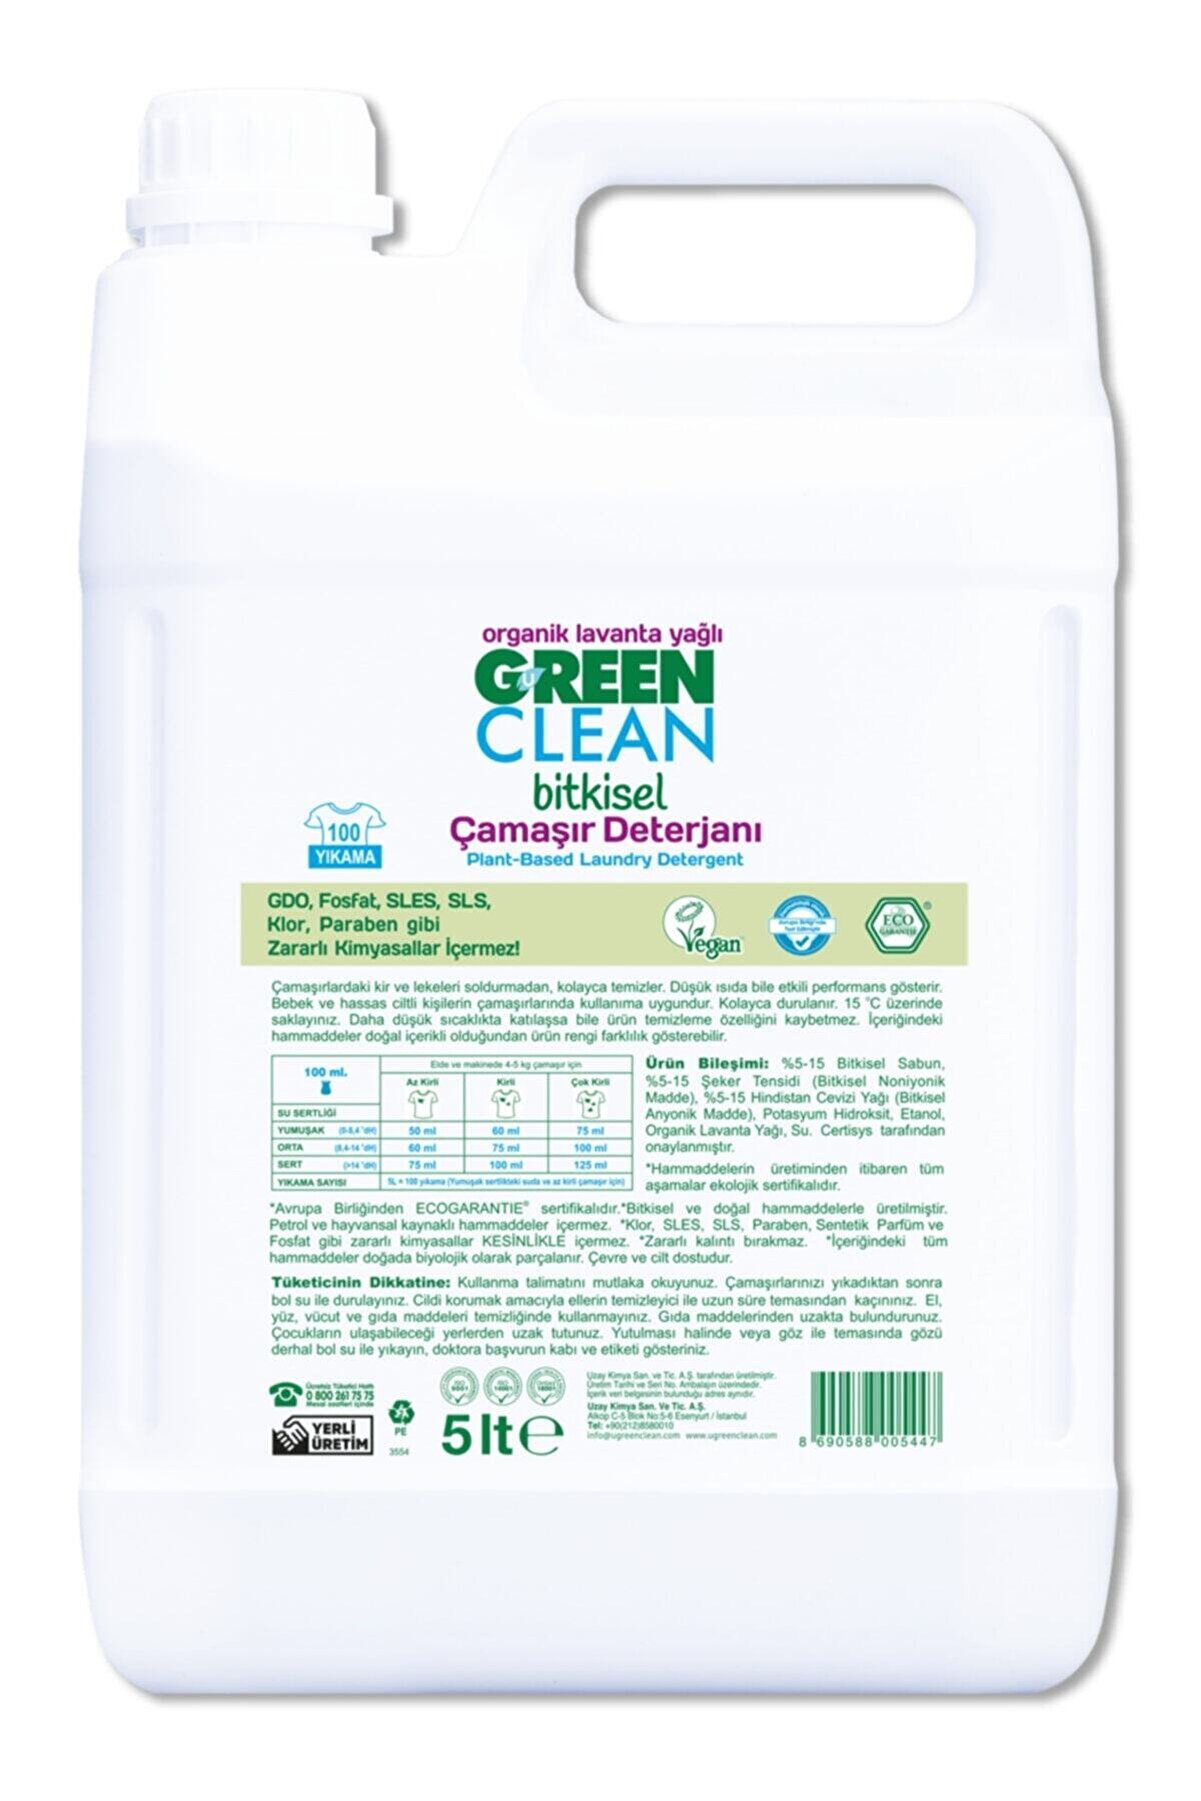 Green Clean Organik Lavanta Yağlı Bitkisel Çamaşır Deterjanı 5 lt